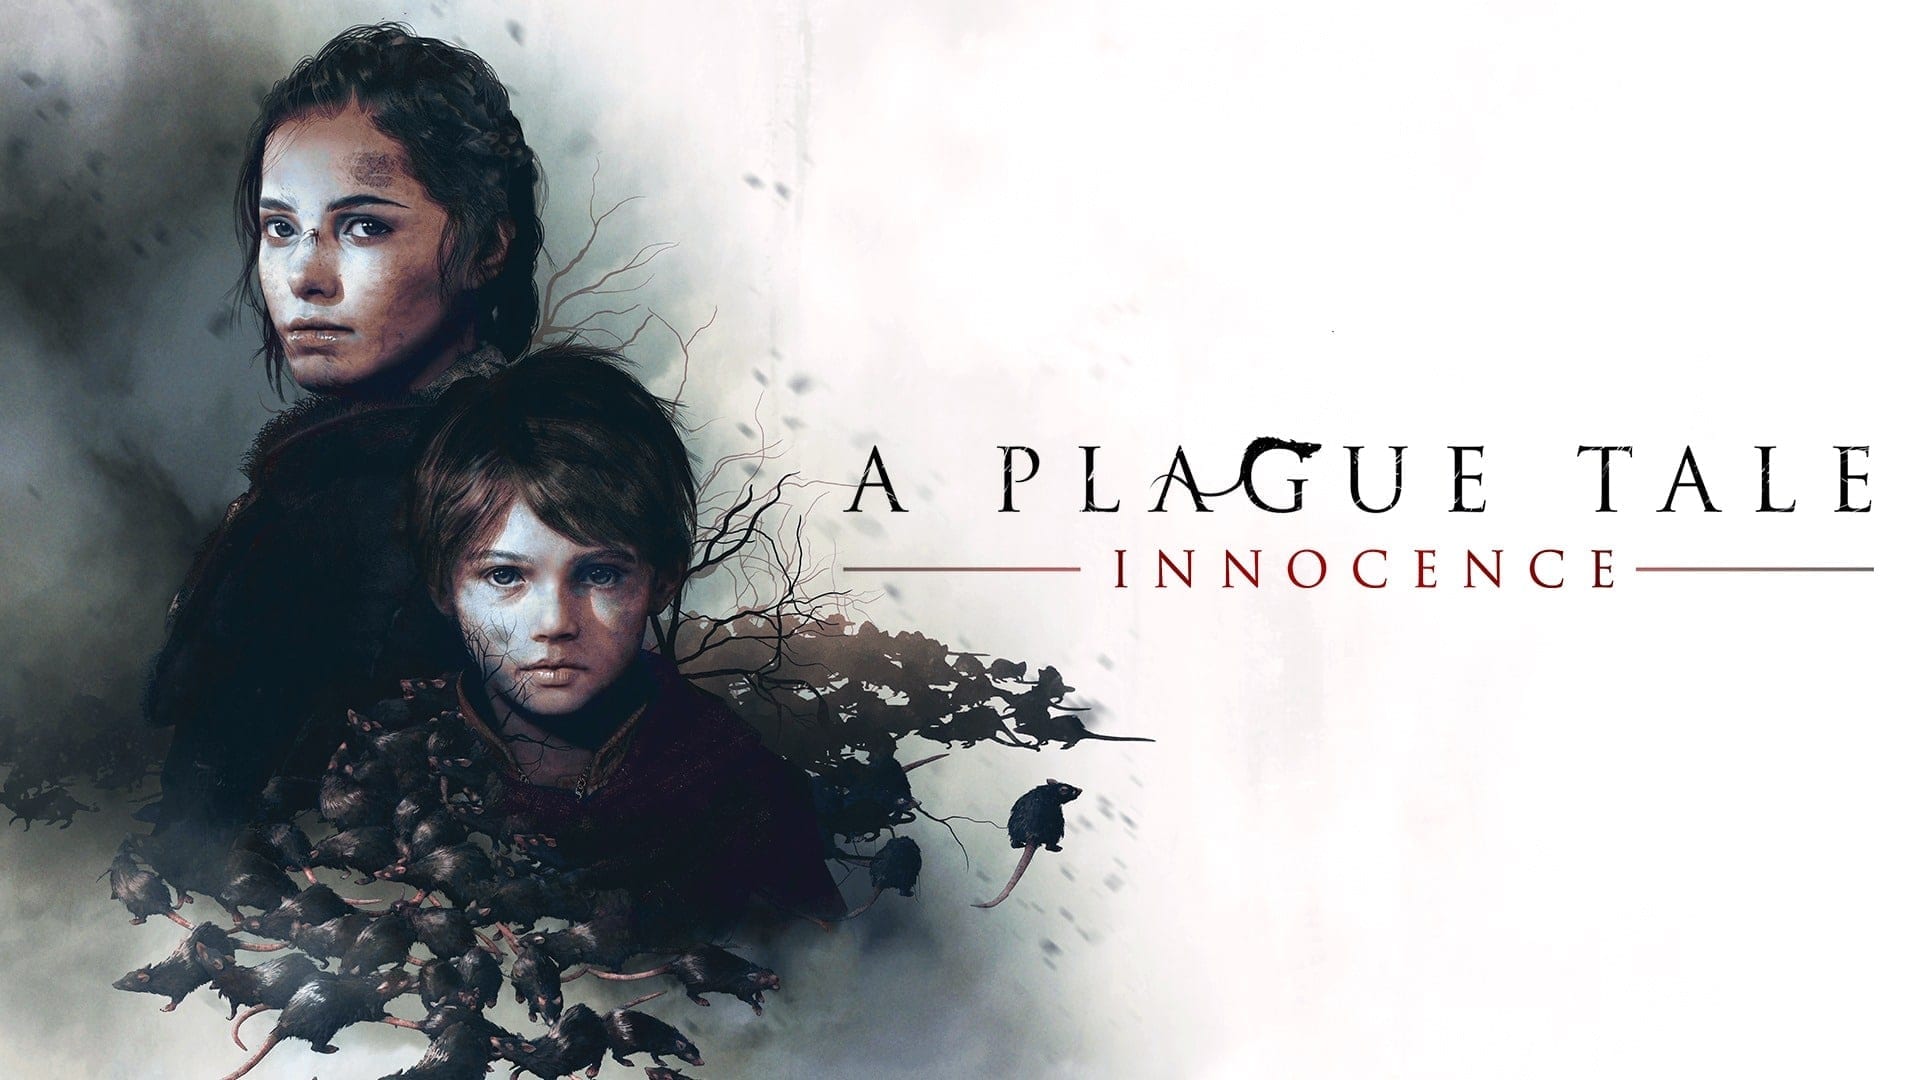 A Plague tale : Innocence